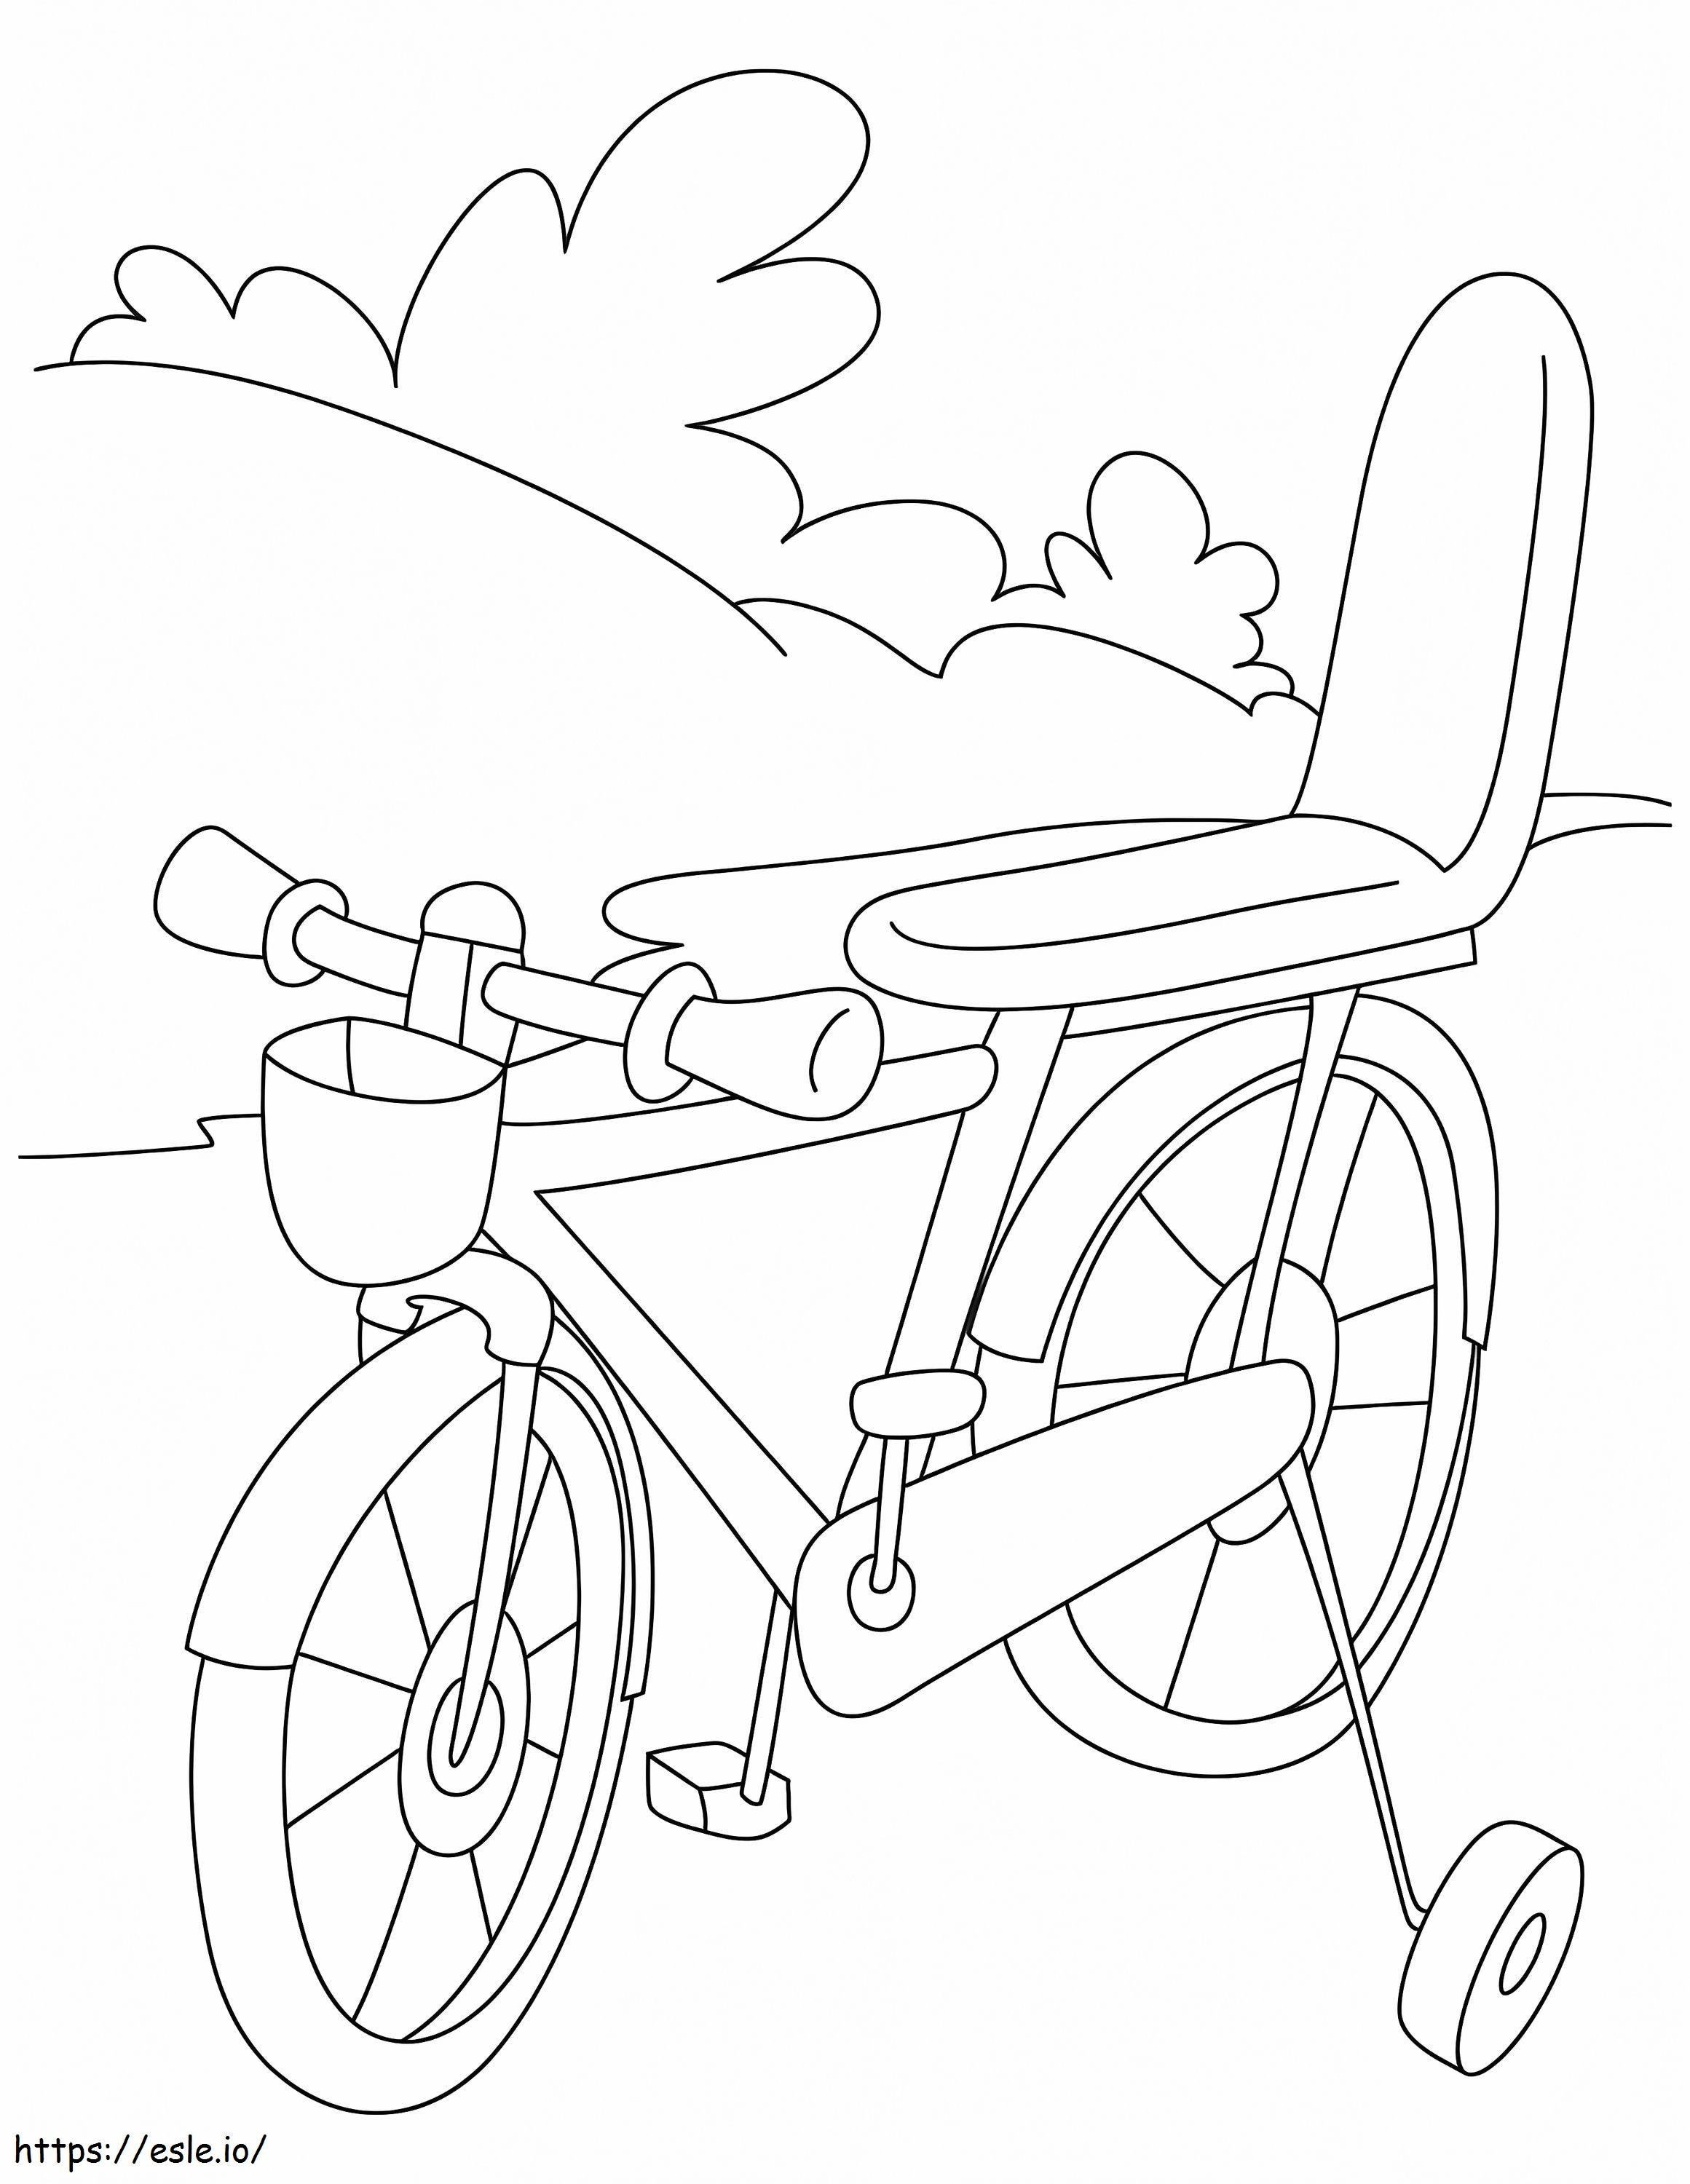 Bicicleta Pequena para colorir